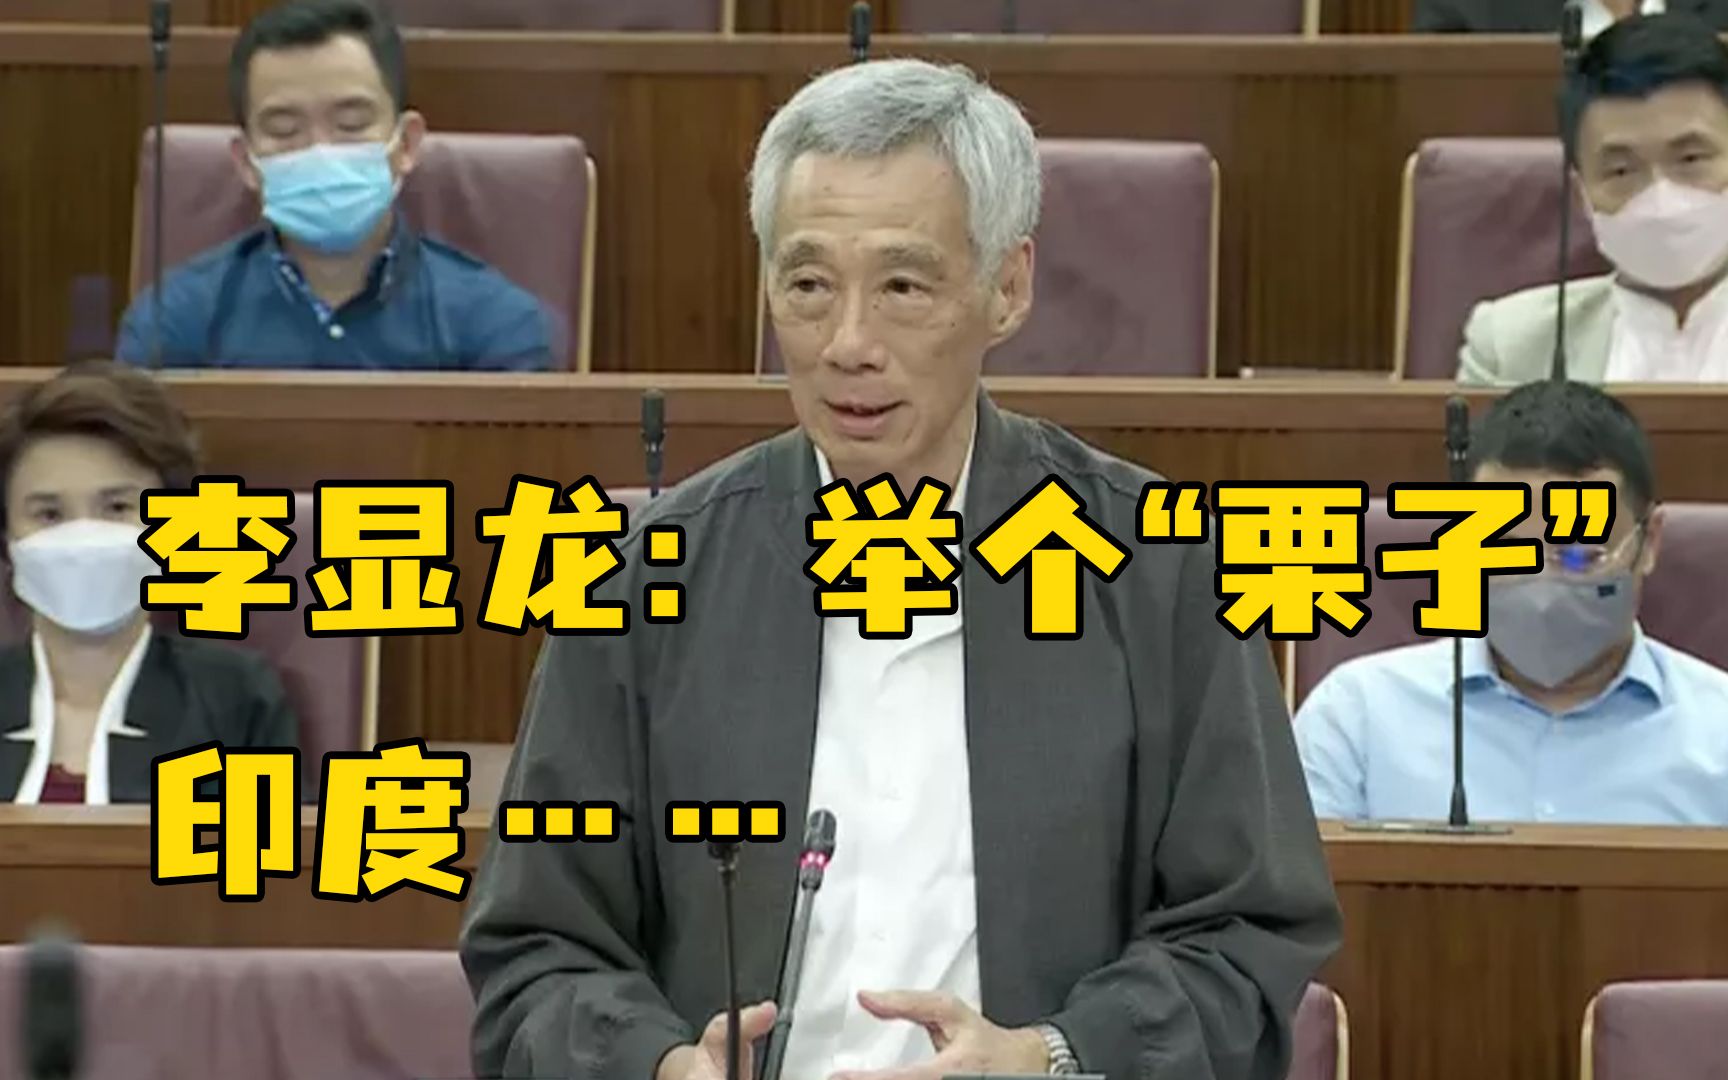 新加坡总理李显龙称印度人民院曾有近半议员被控犯罪，引印方不满